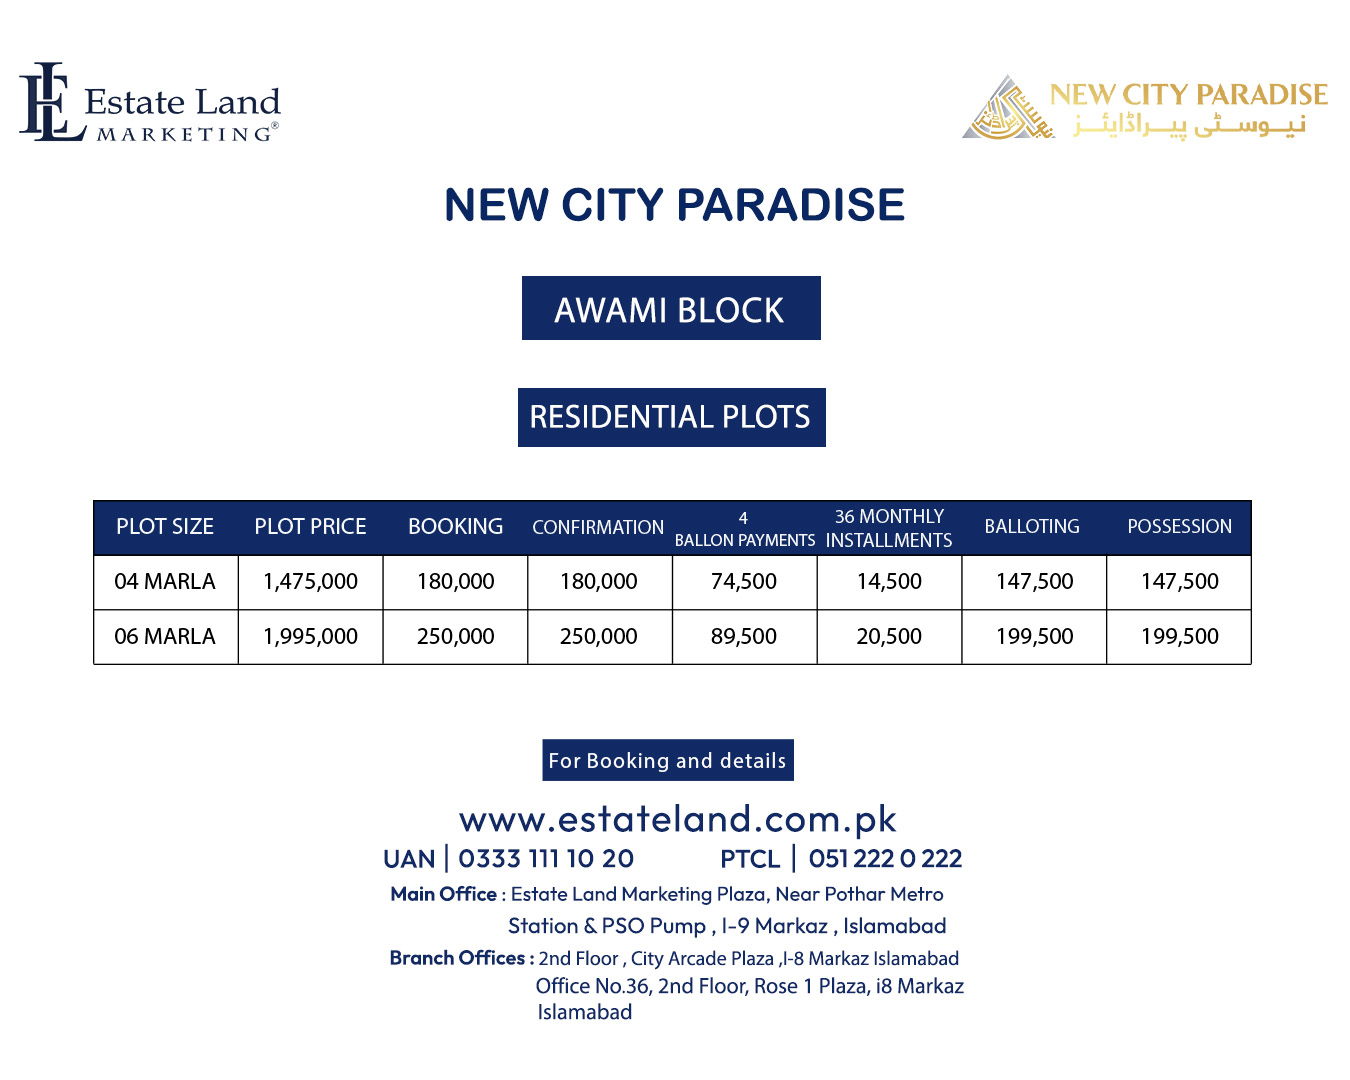 New City Paradise Awami Block payment plan